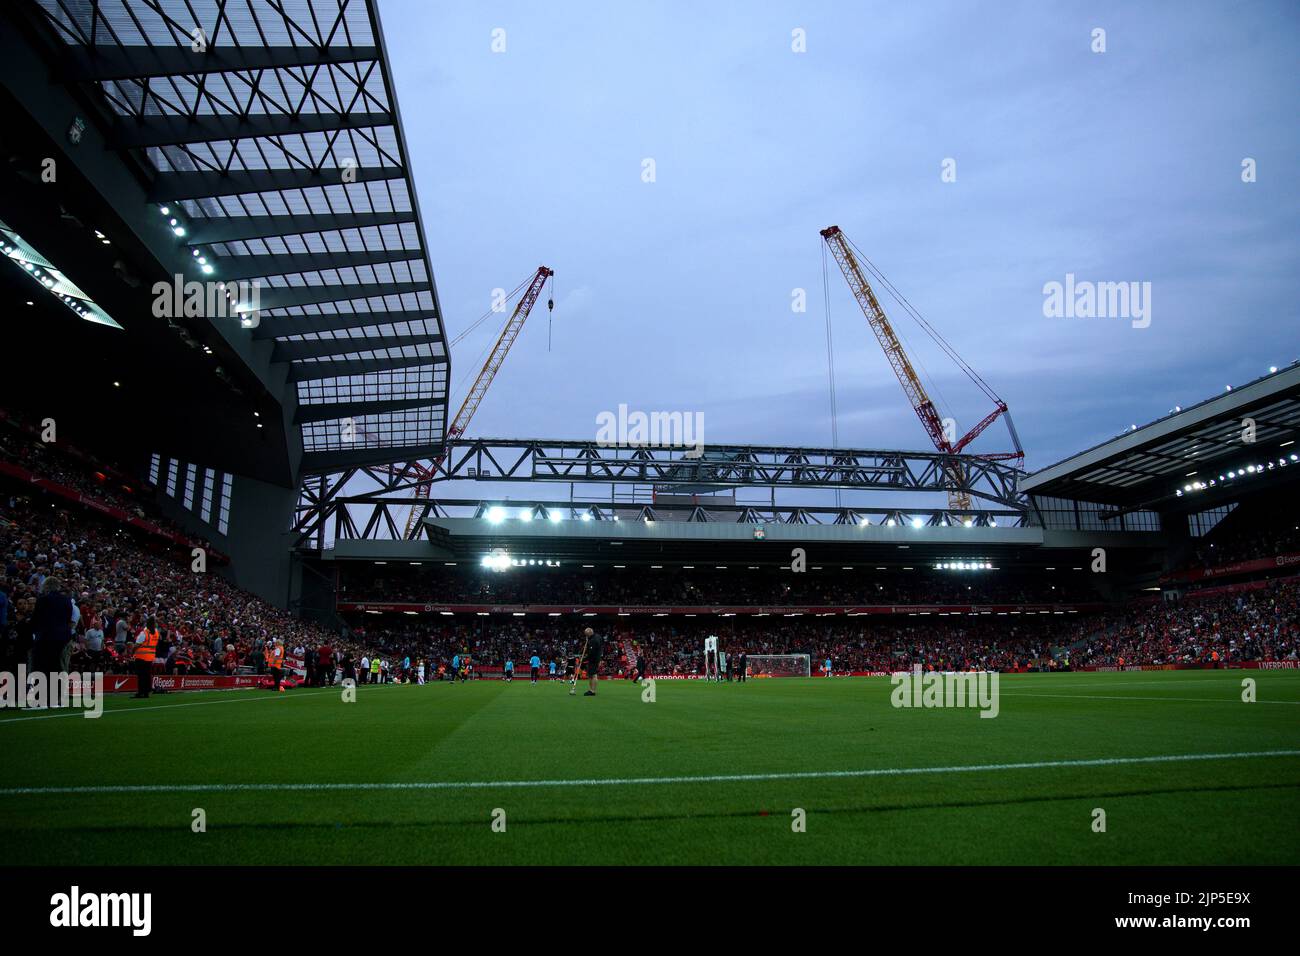 Una vista general del estadio donde la construcción del nuevo stand de Anfield Road es visible, antes del partido de la Premier League en Anfield, Liverpool. Fecha de la foto: Lunes 15 de agosto de 2022. Foto de stock